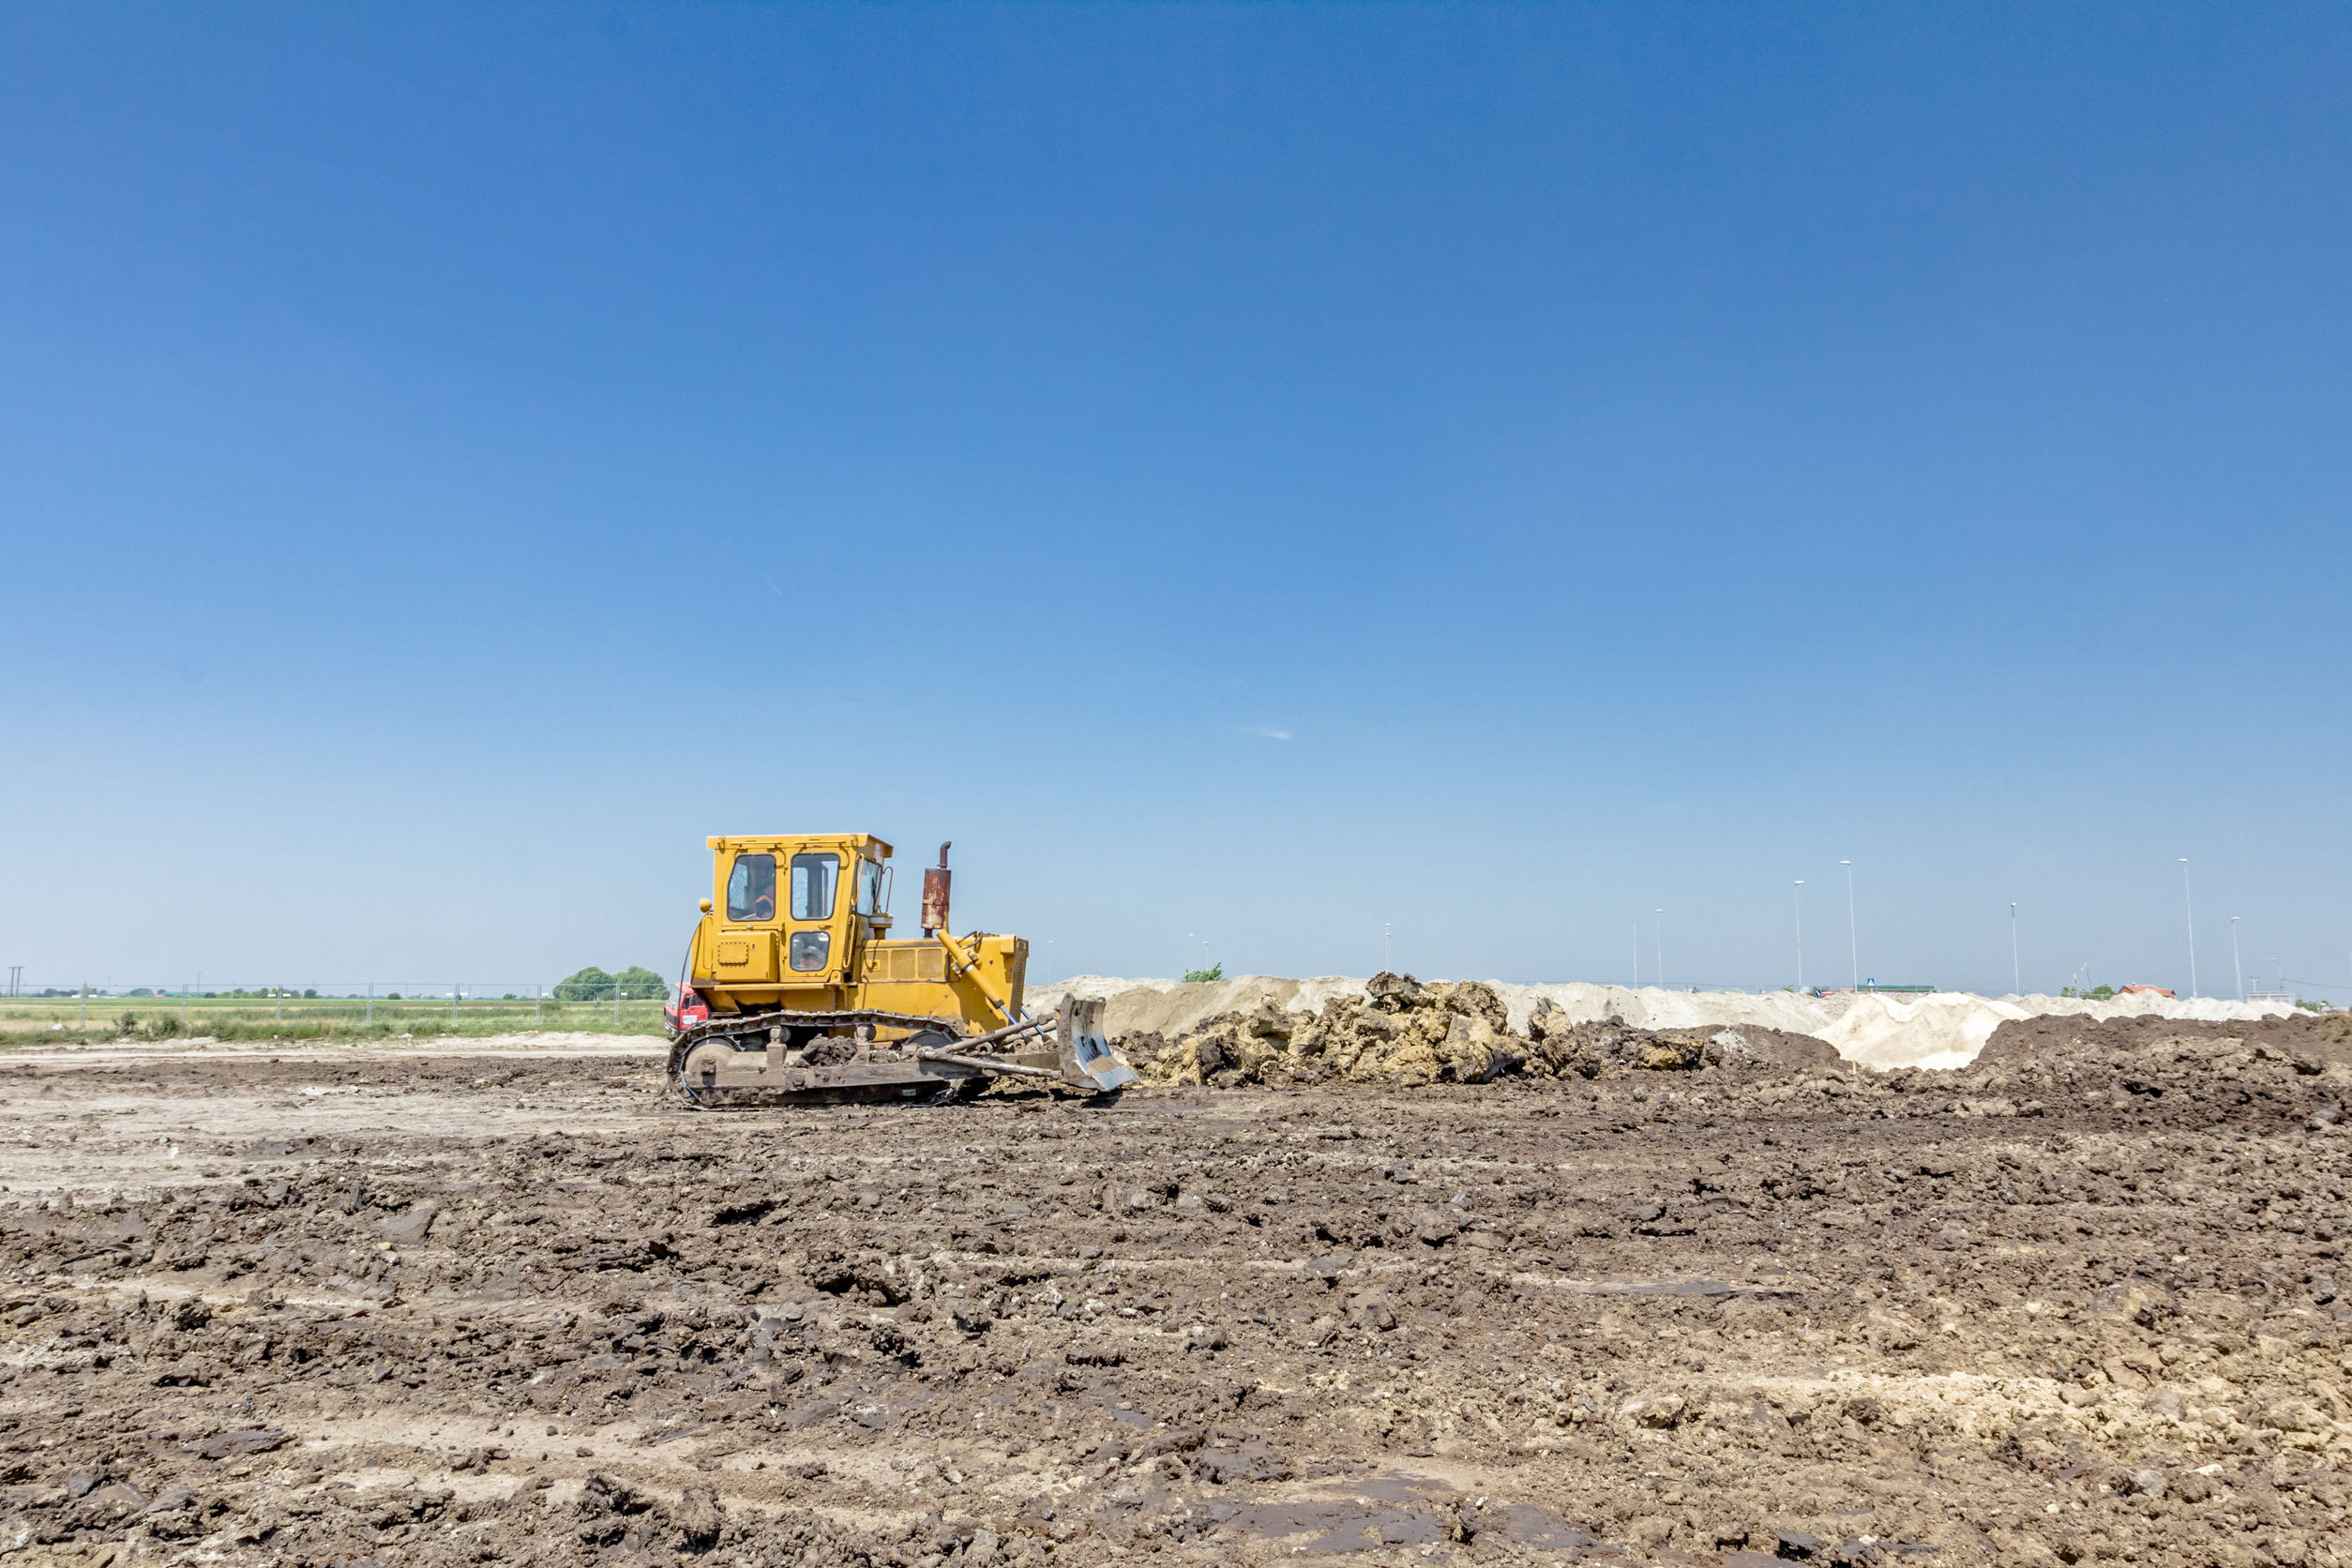 recherche chantier, terrain à bâtir, un bulldozer effectuant le nivellement d'un terrain en vue d'un chantier de construction